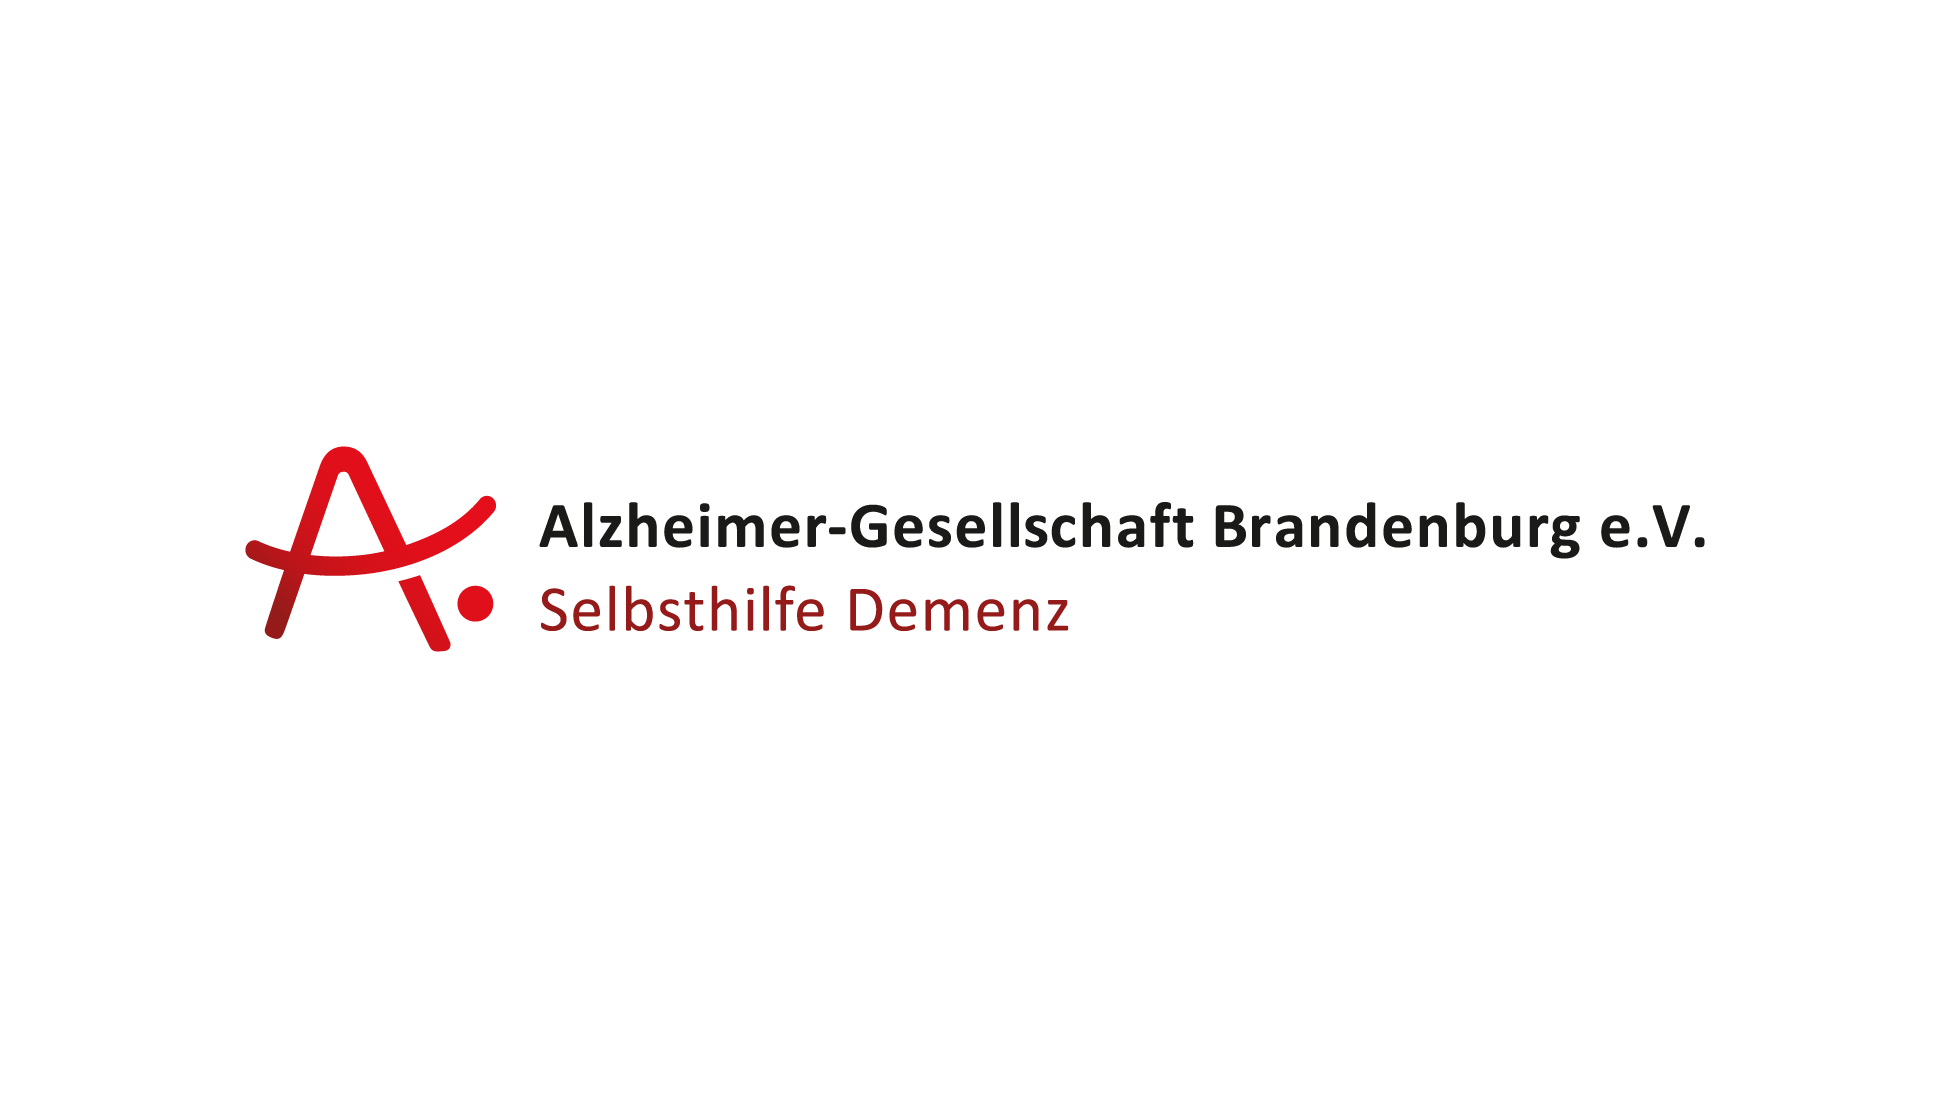 Alzheimer Gesellschaft Brandenburg e.V.